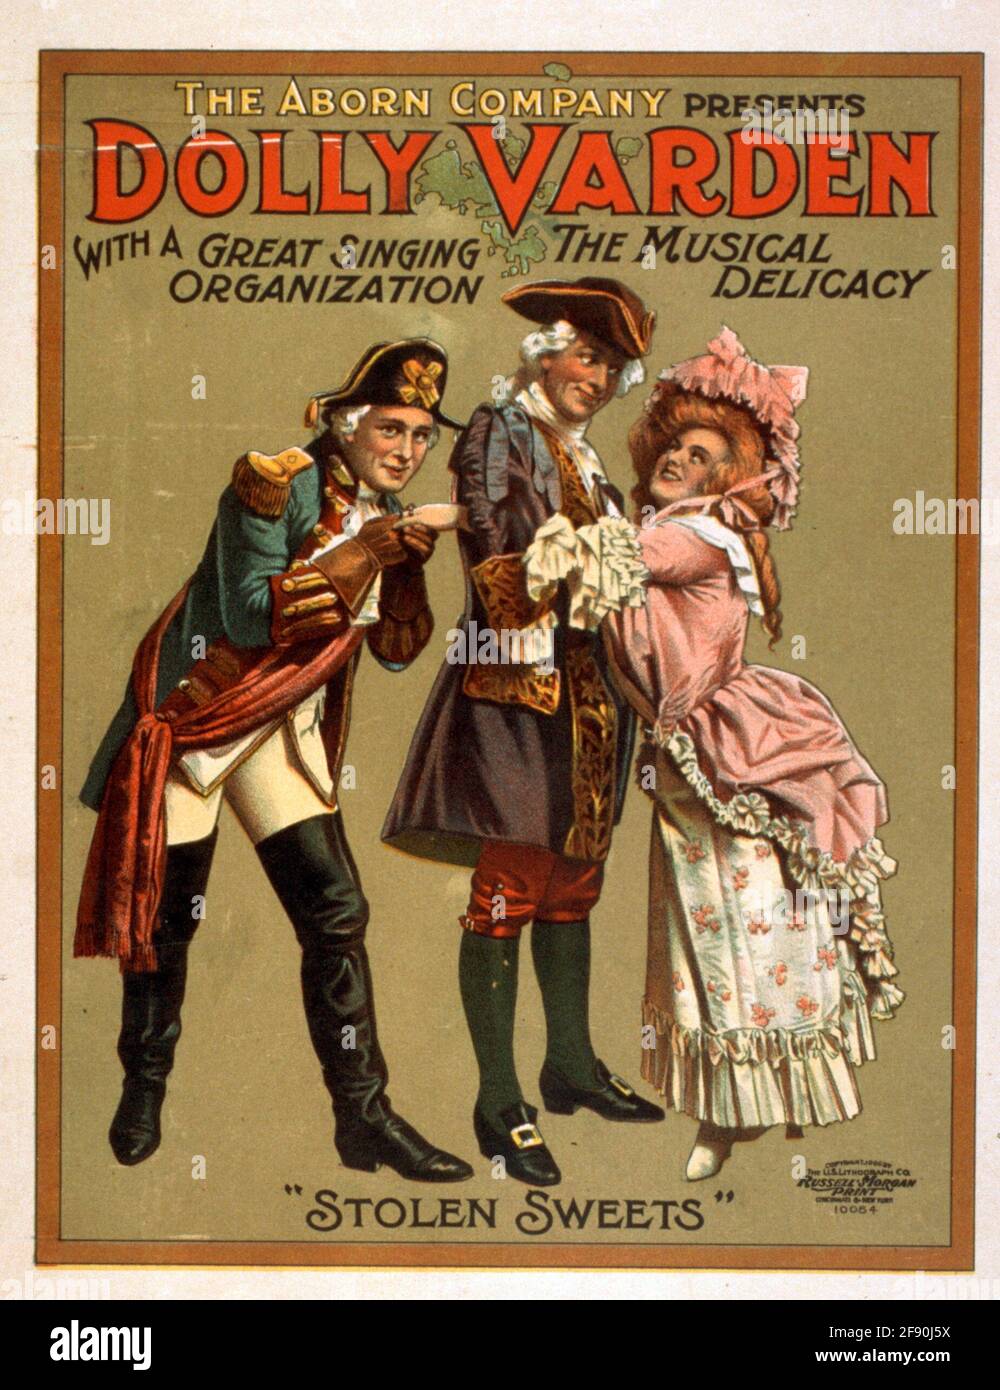 Die Aborn Company präsentiert Dolly Varden die musikalische Delikatesse mit einer großartigen Gesangsorganisation, um 1906 Stockfoto